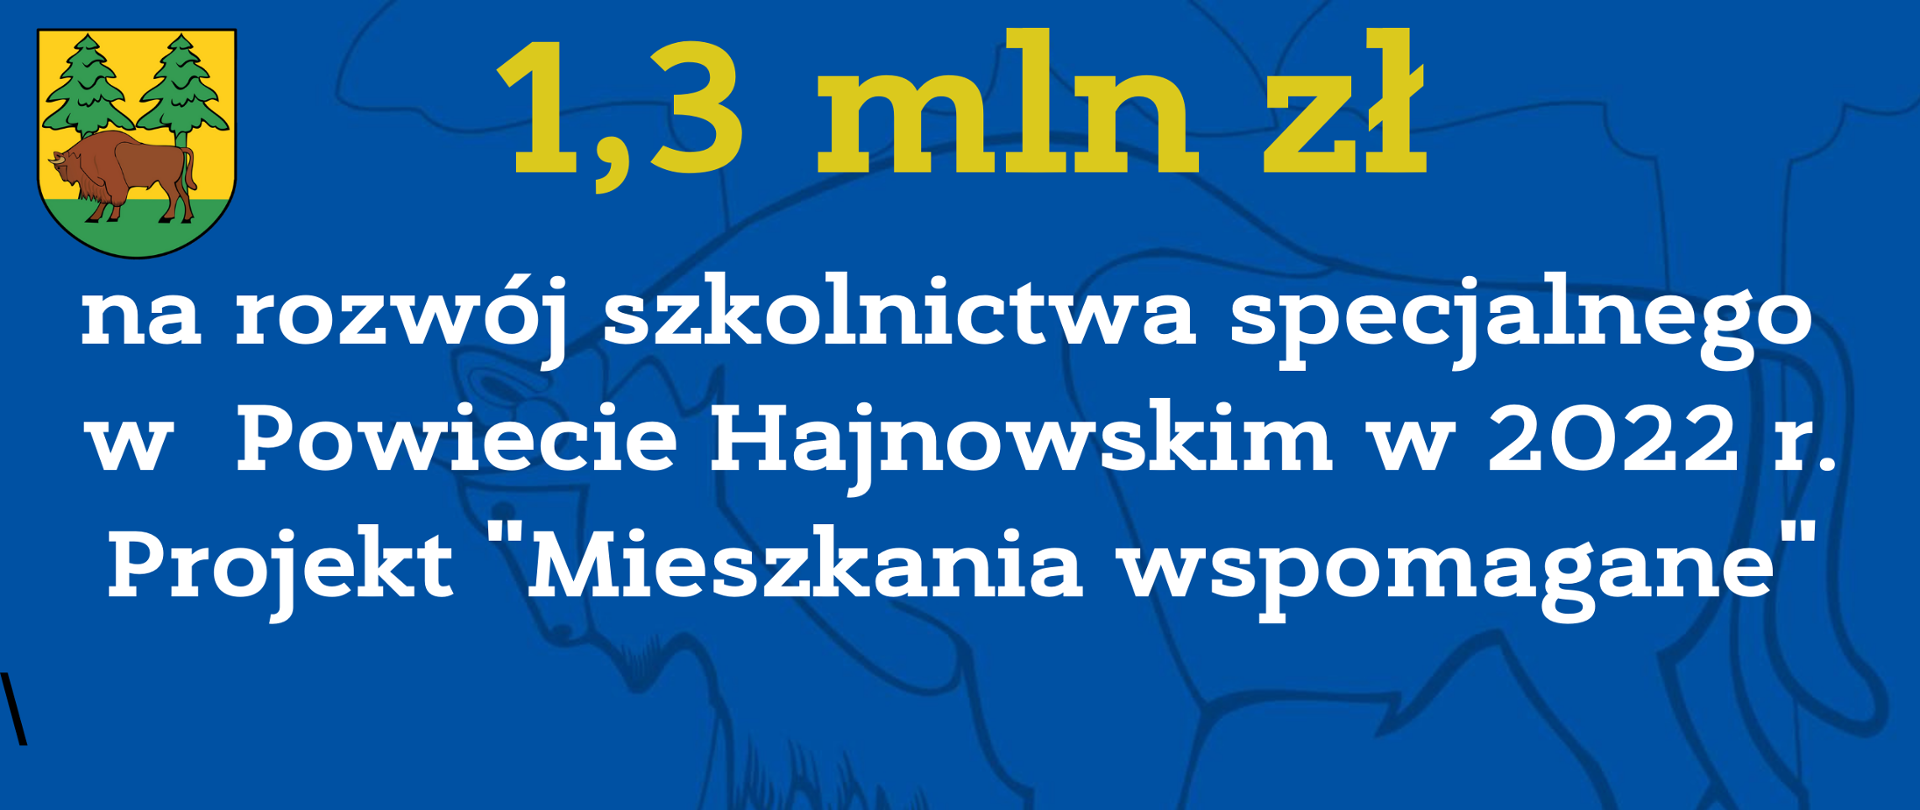 1,3 mln zł na rozwój szkolnictwa specjalnego w Powiecie Hajnowskim w 2022 r. Projekt "Mieszkania wspomagane".